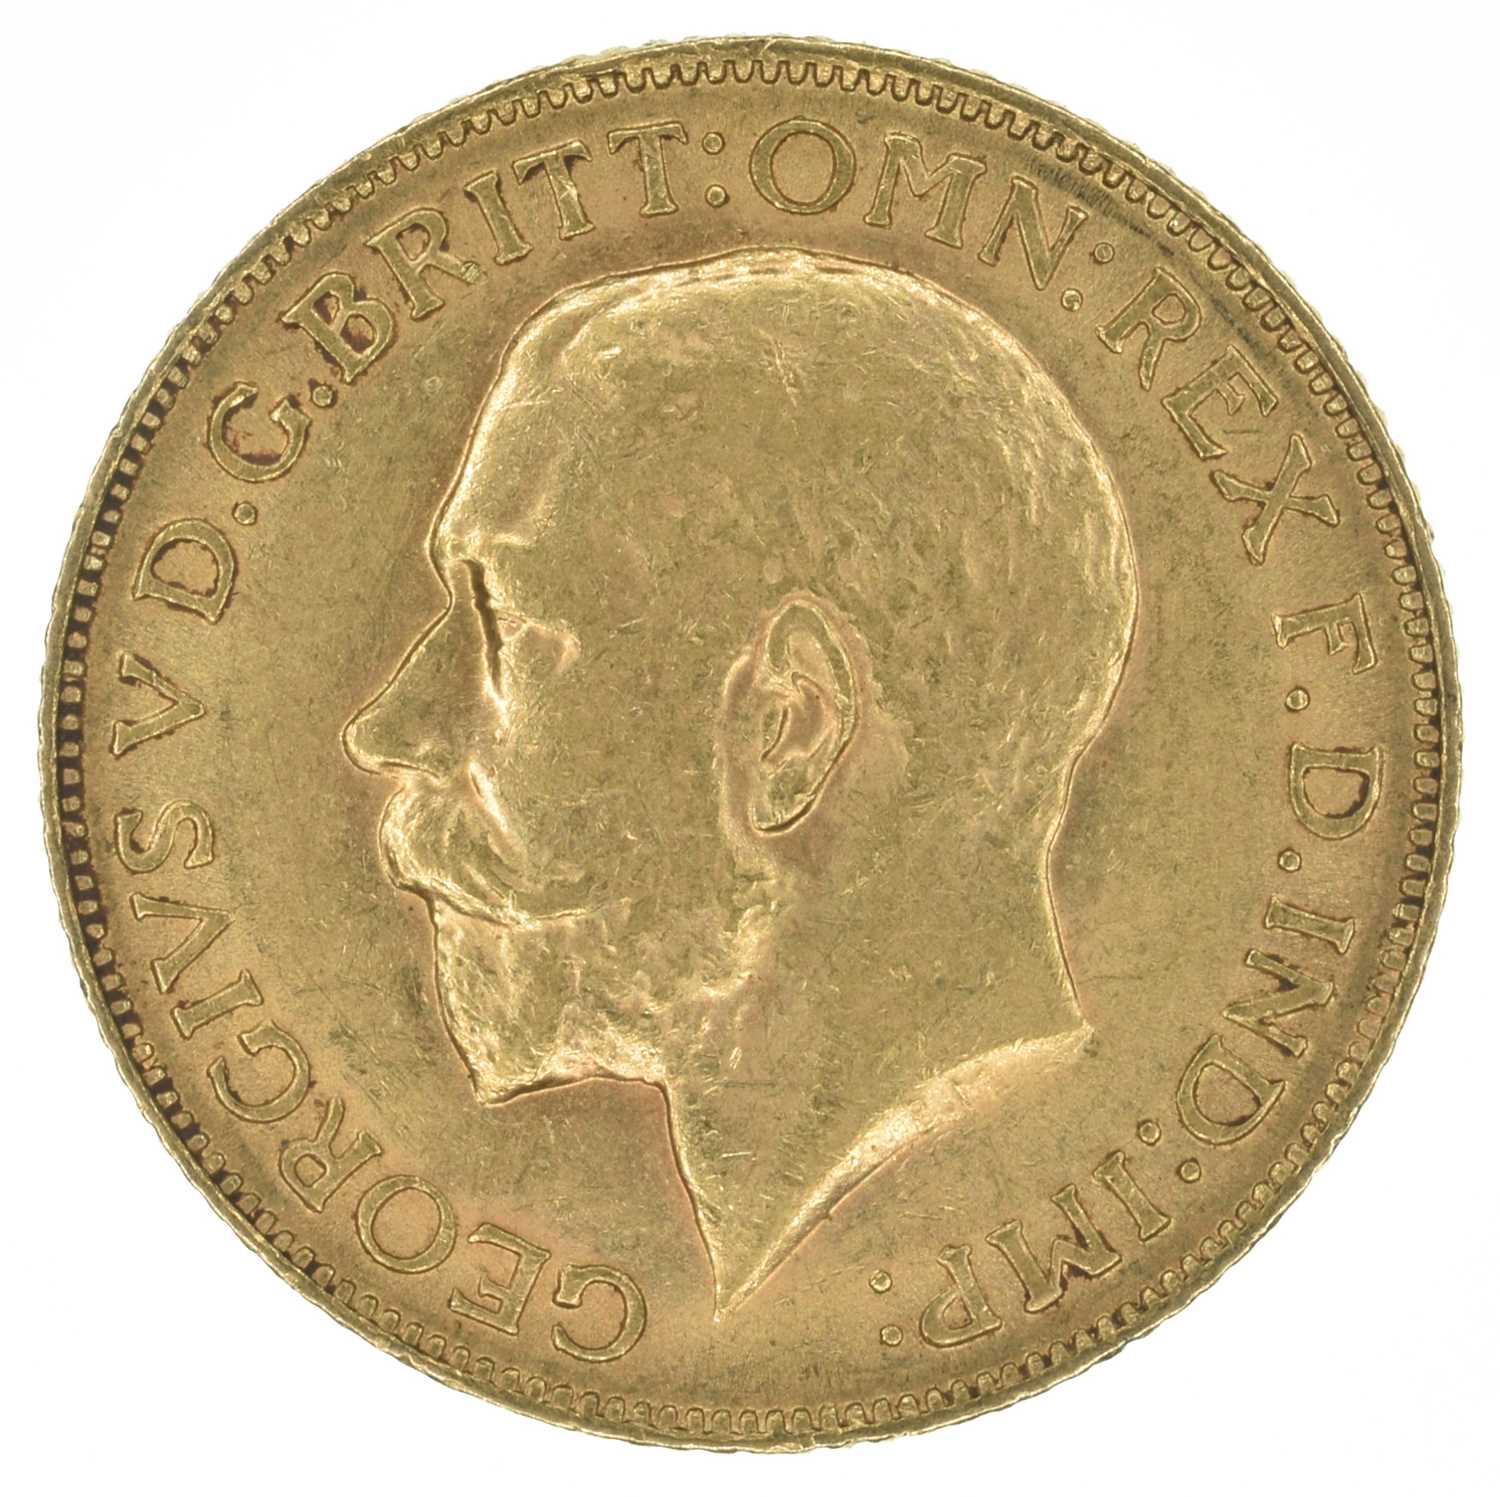 King George V, Sovereign, 1913.